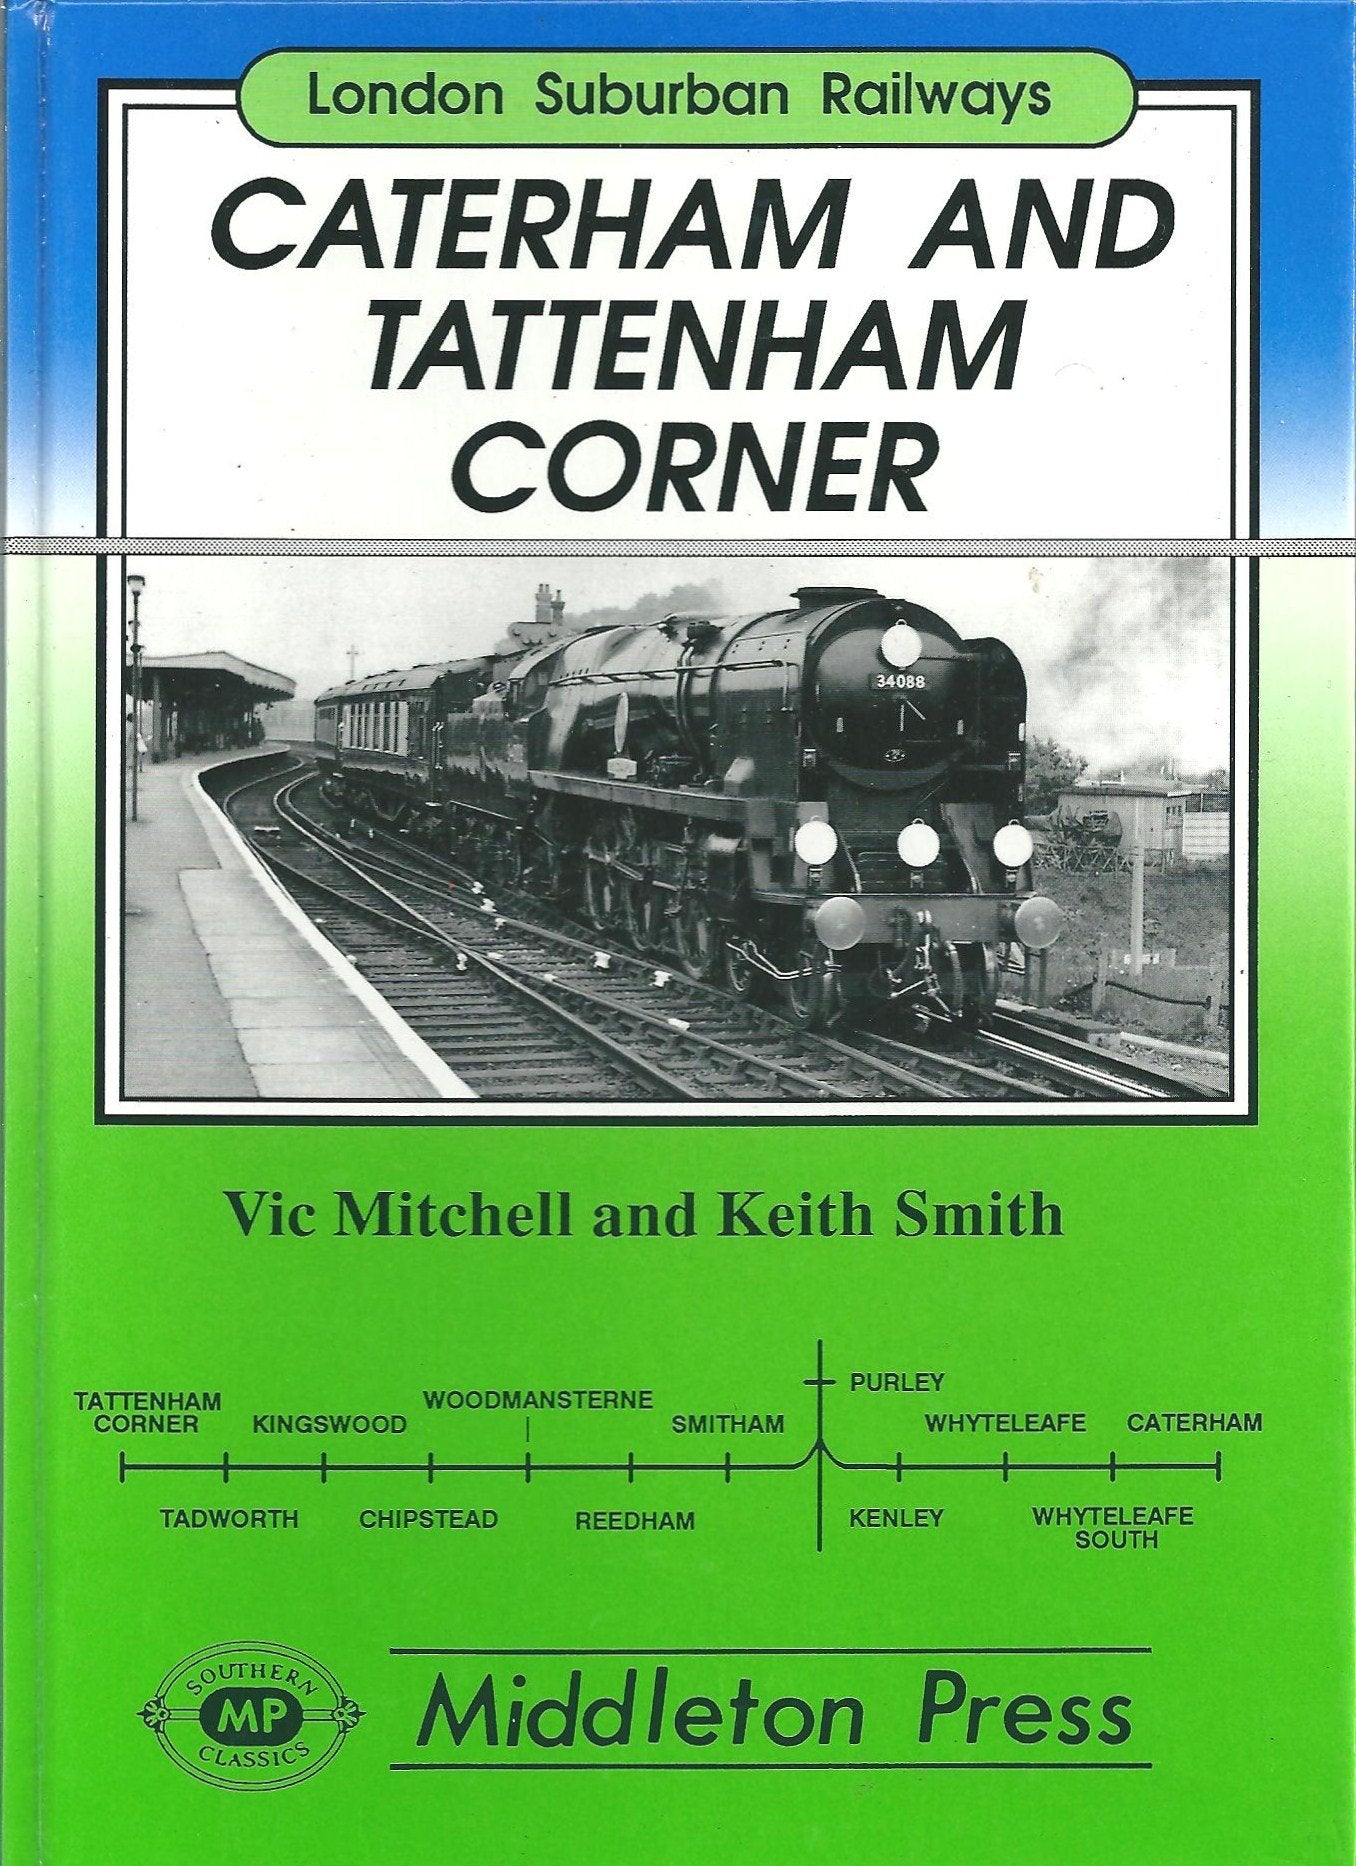 London Suburban Railways Caterham and Tattenham Corner two branches from Purley